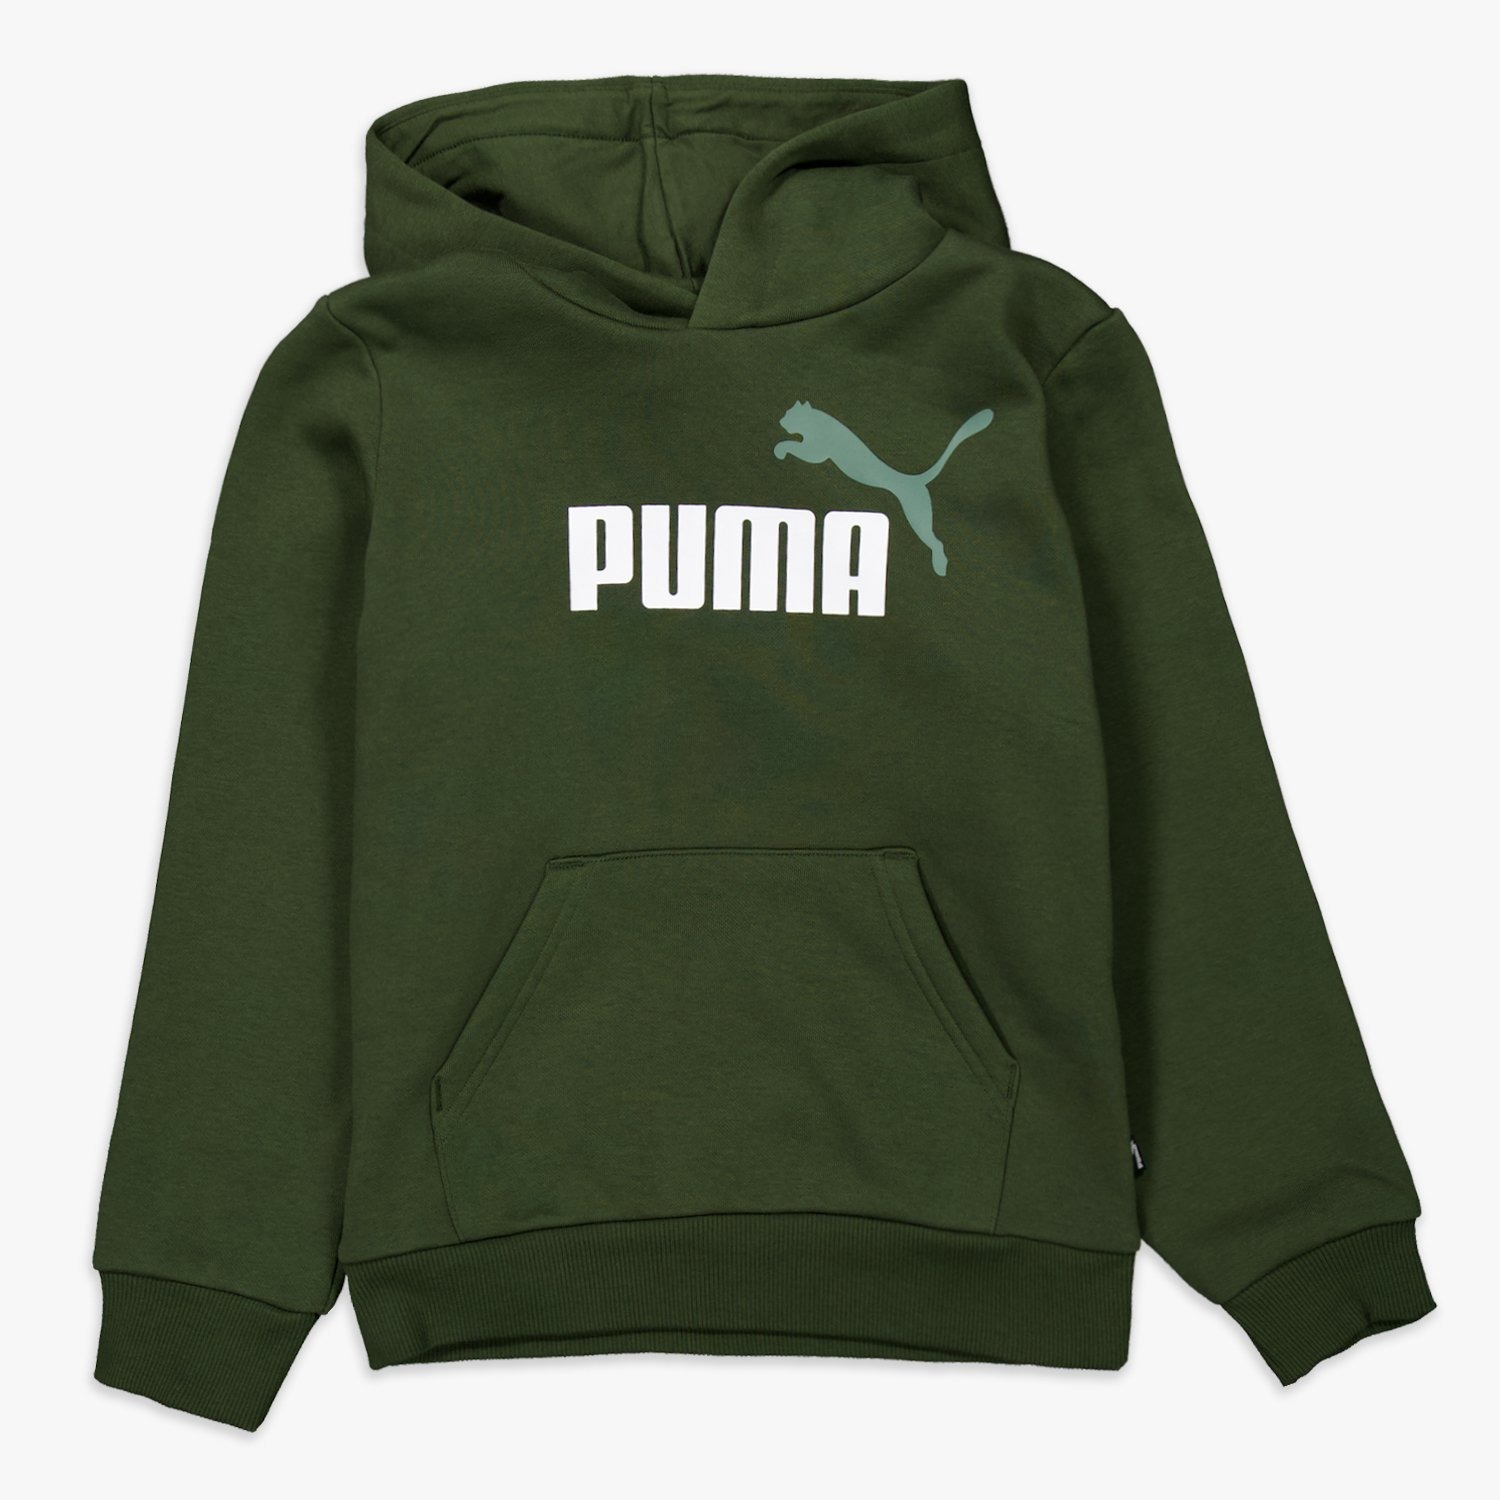 Puma Puma trui groen kinderen kinderen